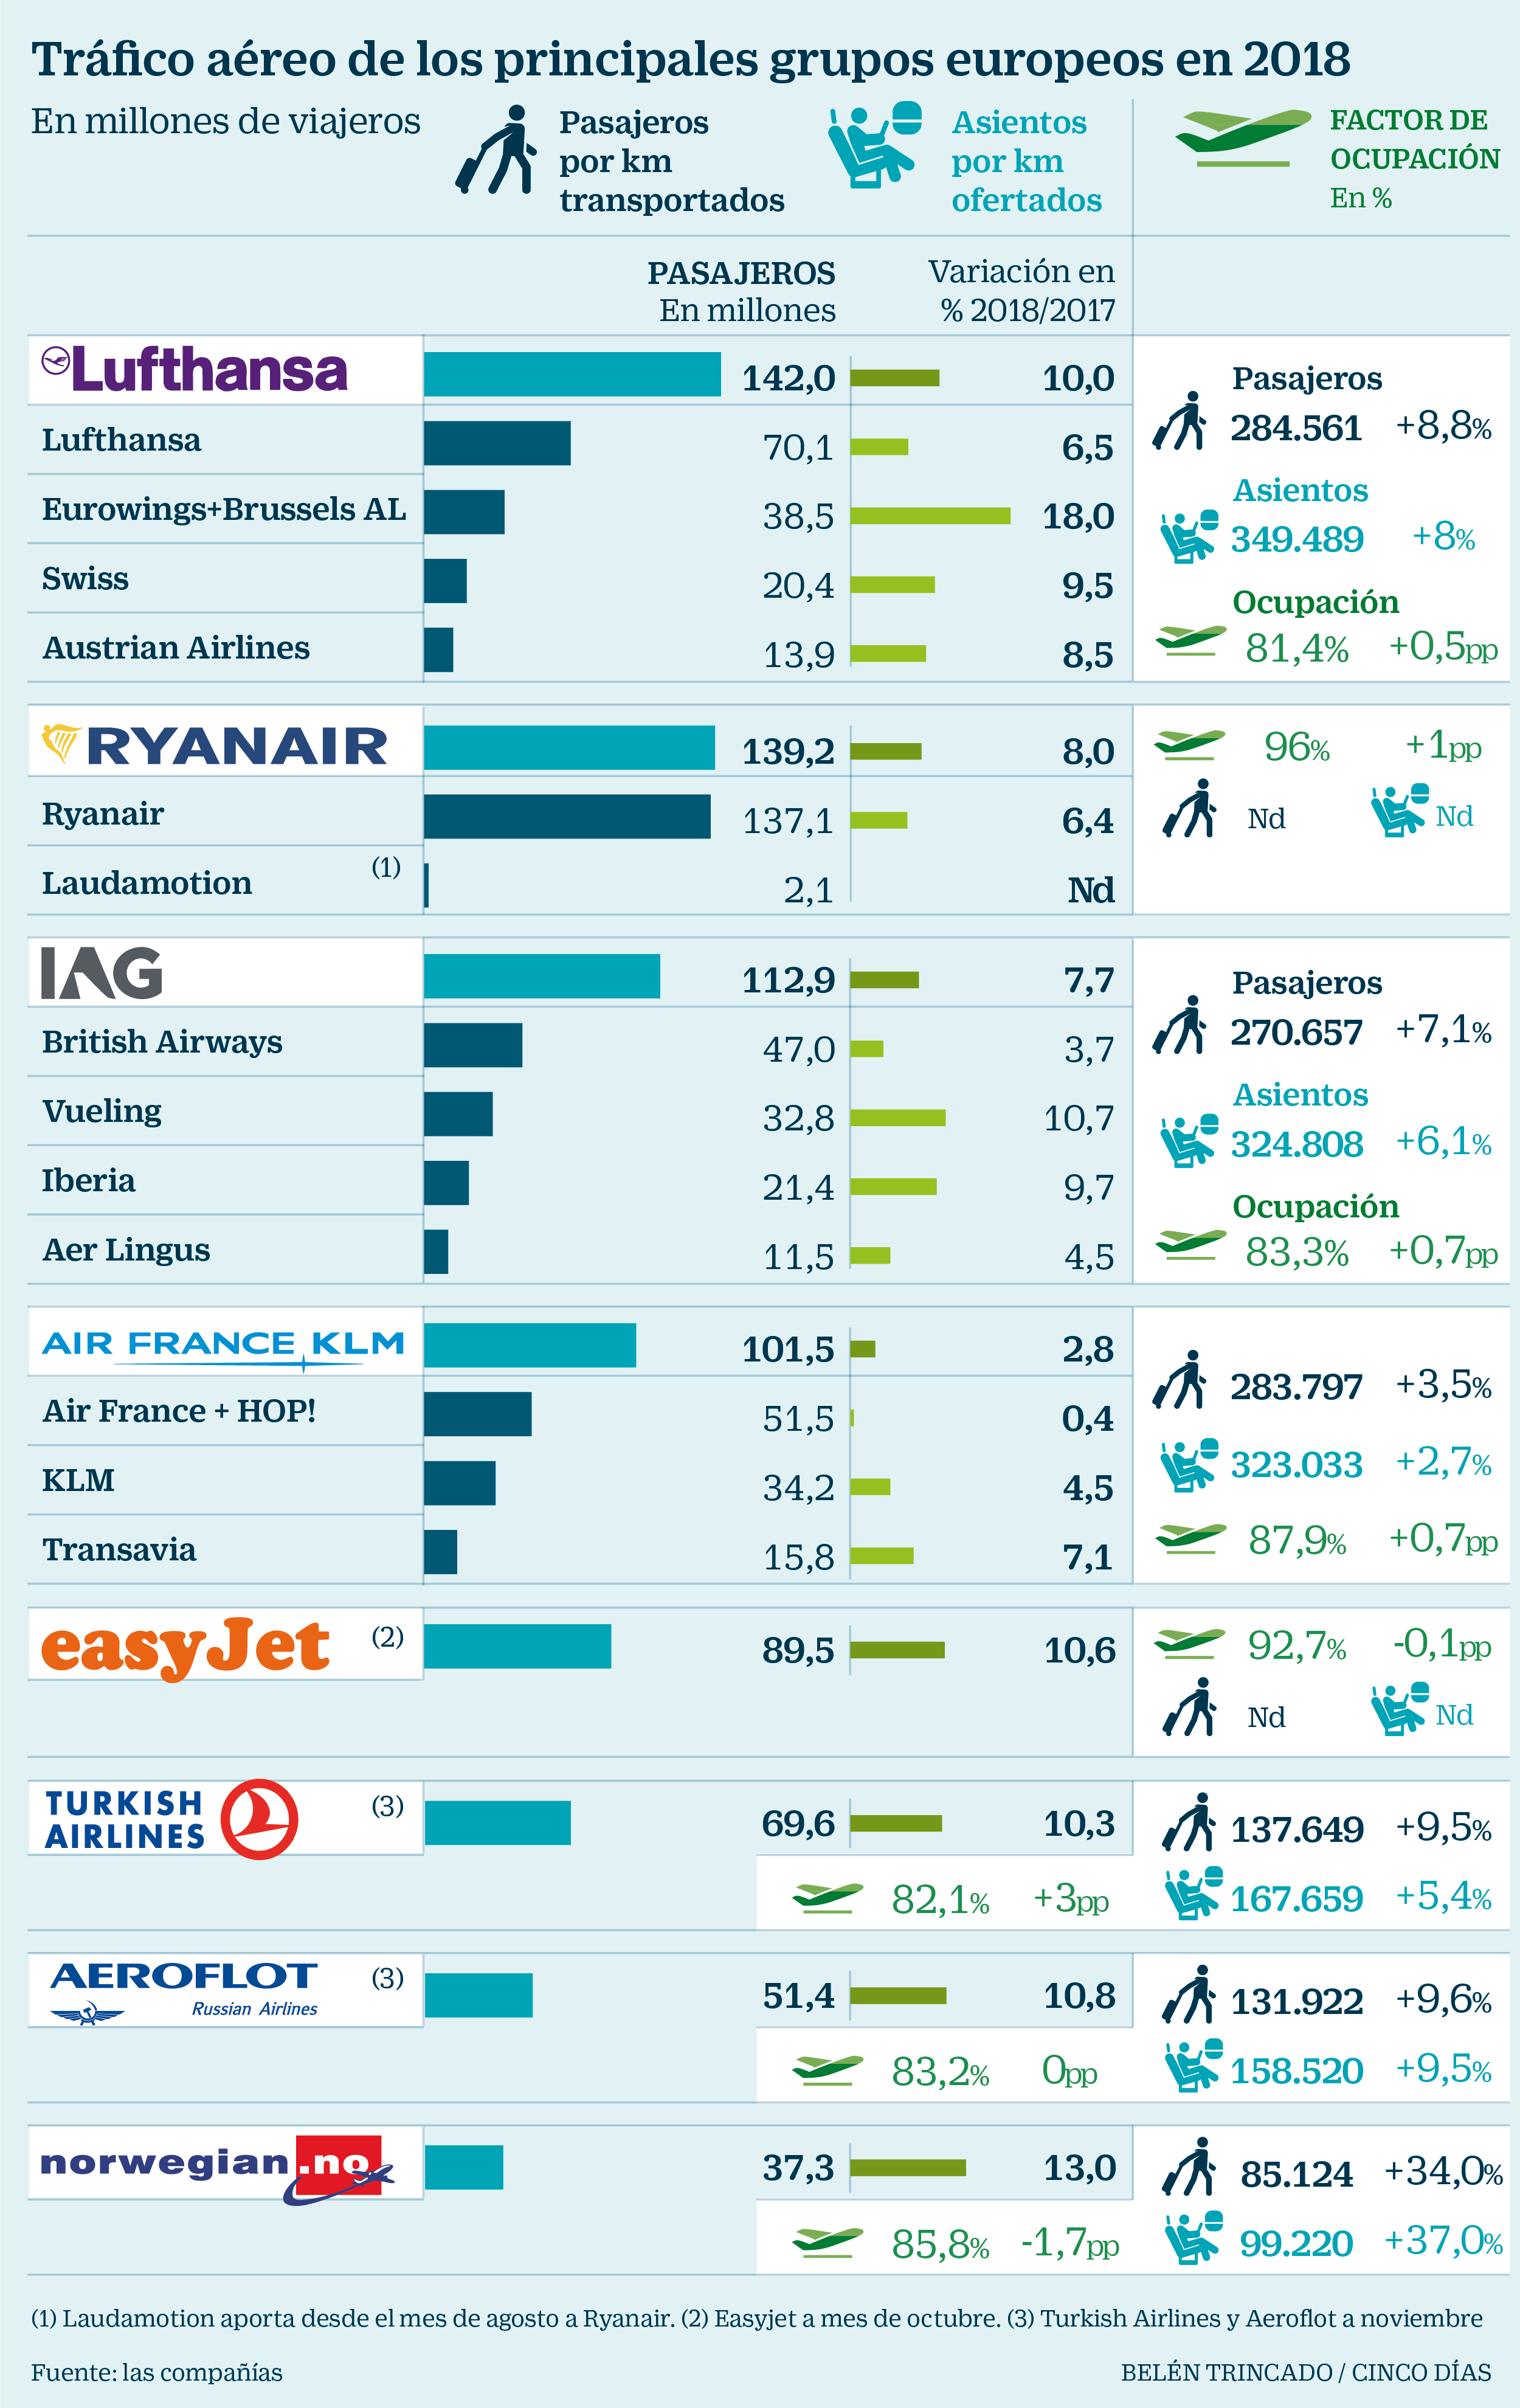 Las grandes aerolíneas europeas ganaron millones de pasajeros en 2018 | Compañías Cinco Días